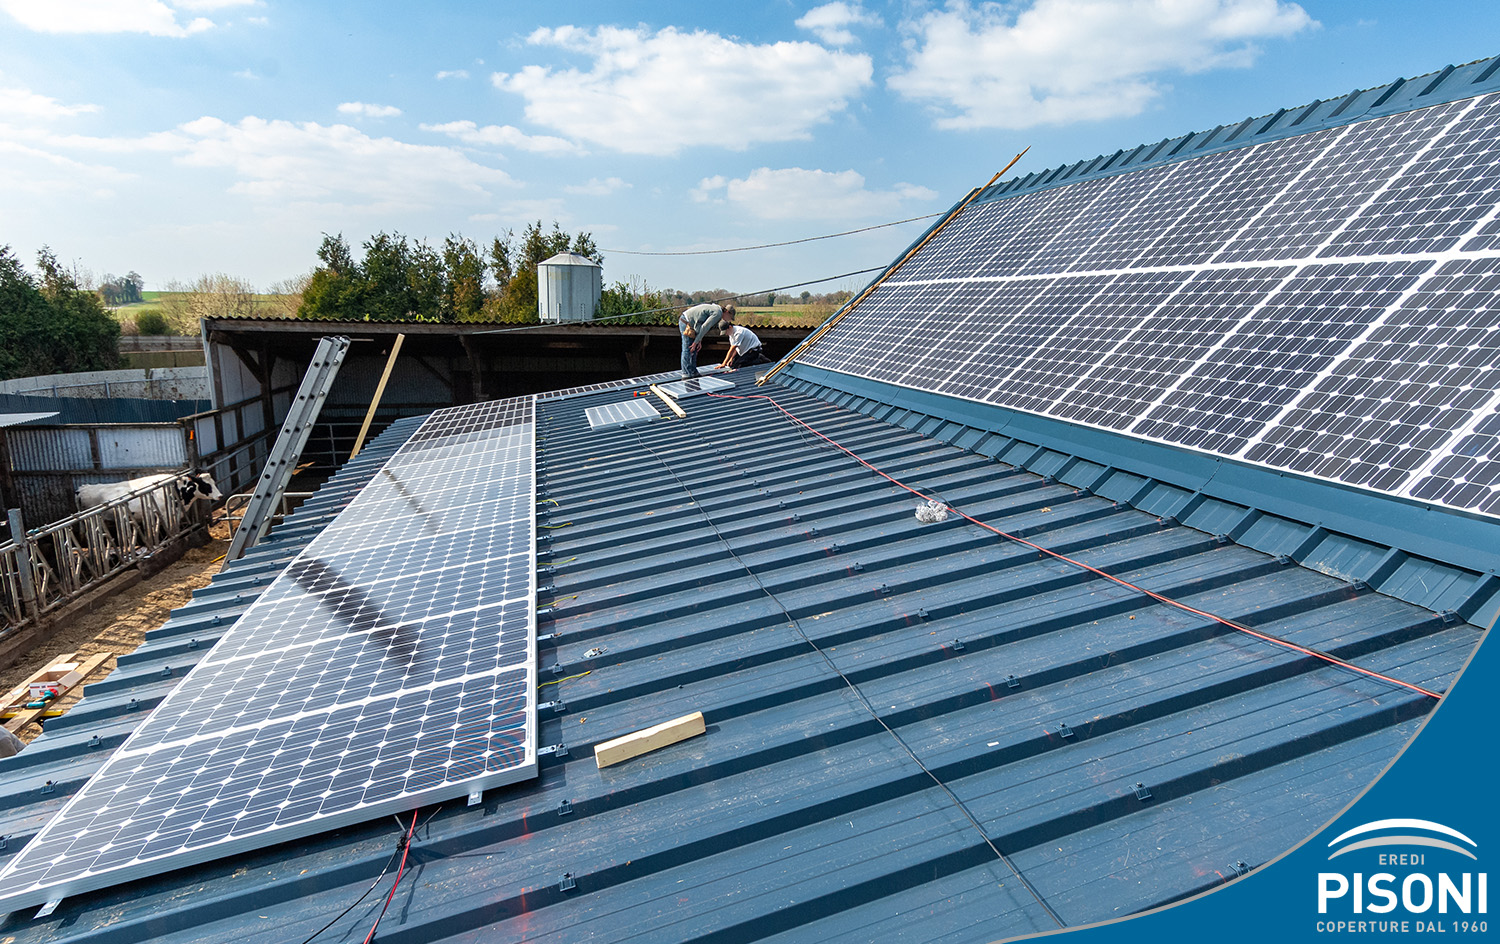 Il fotovoltaico sui tetti agricoli è una scelta intelligente che aiuta a ridurre l'impatto ambientale e può offrire vantaggi economici.